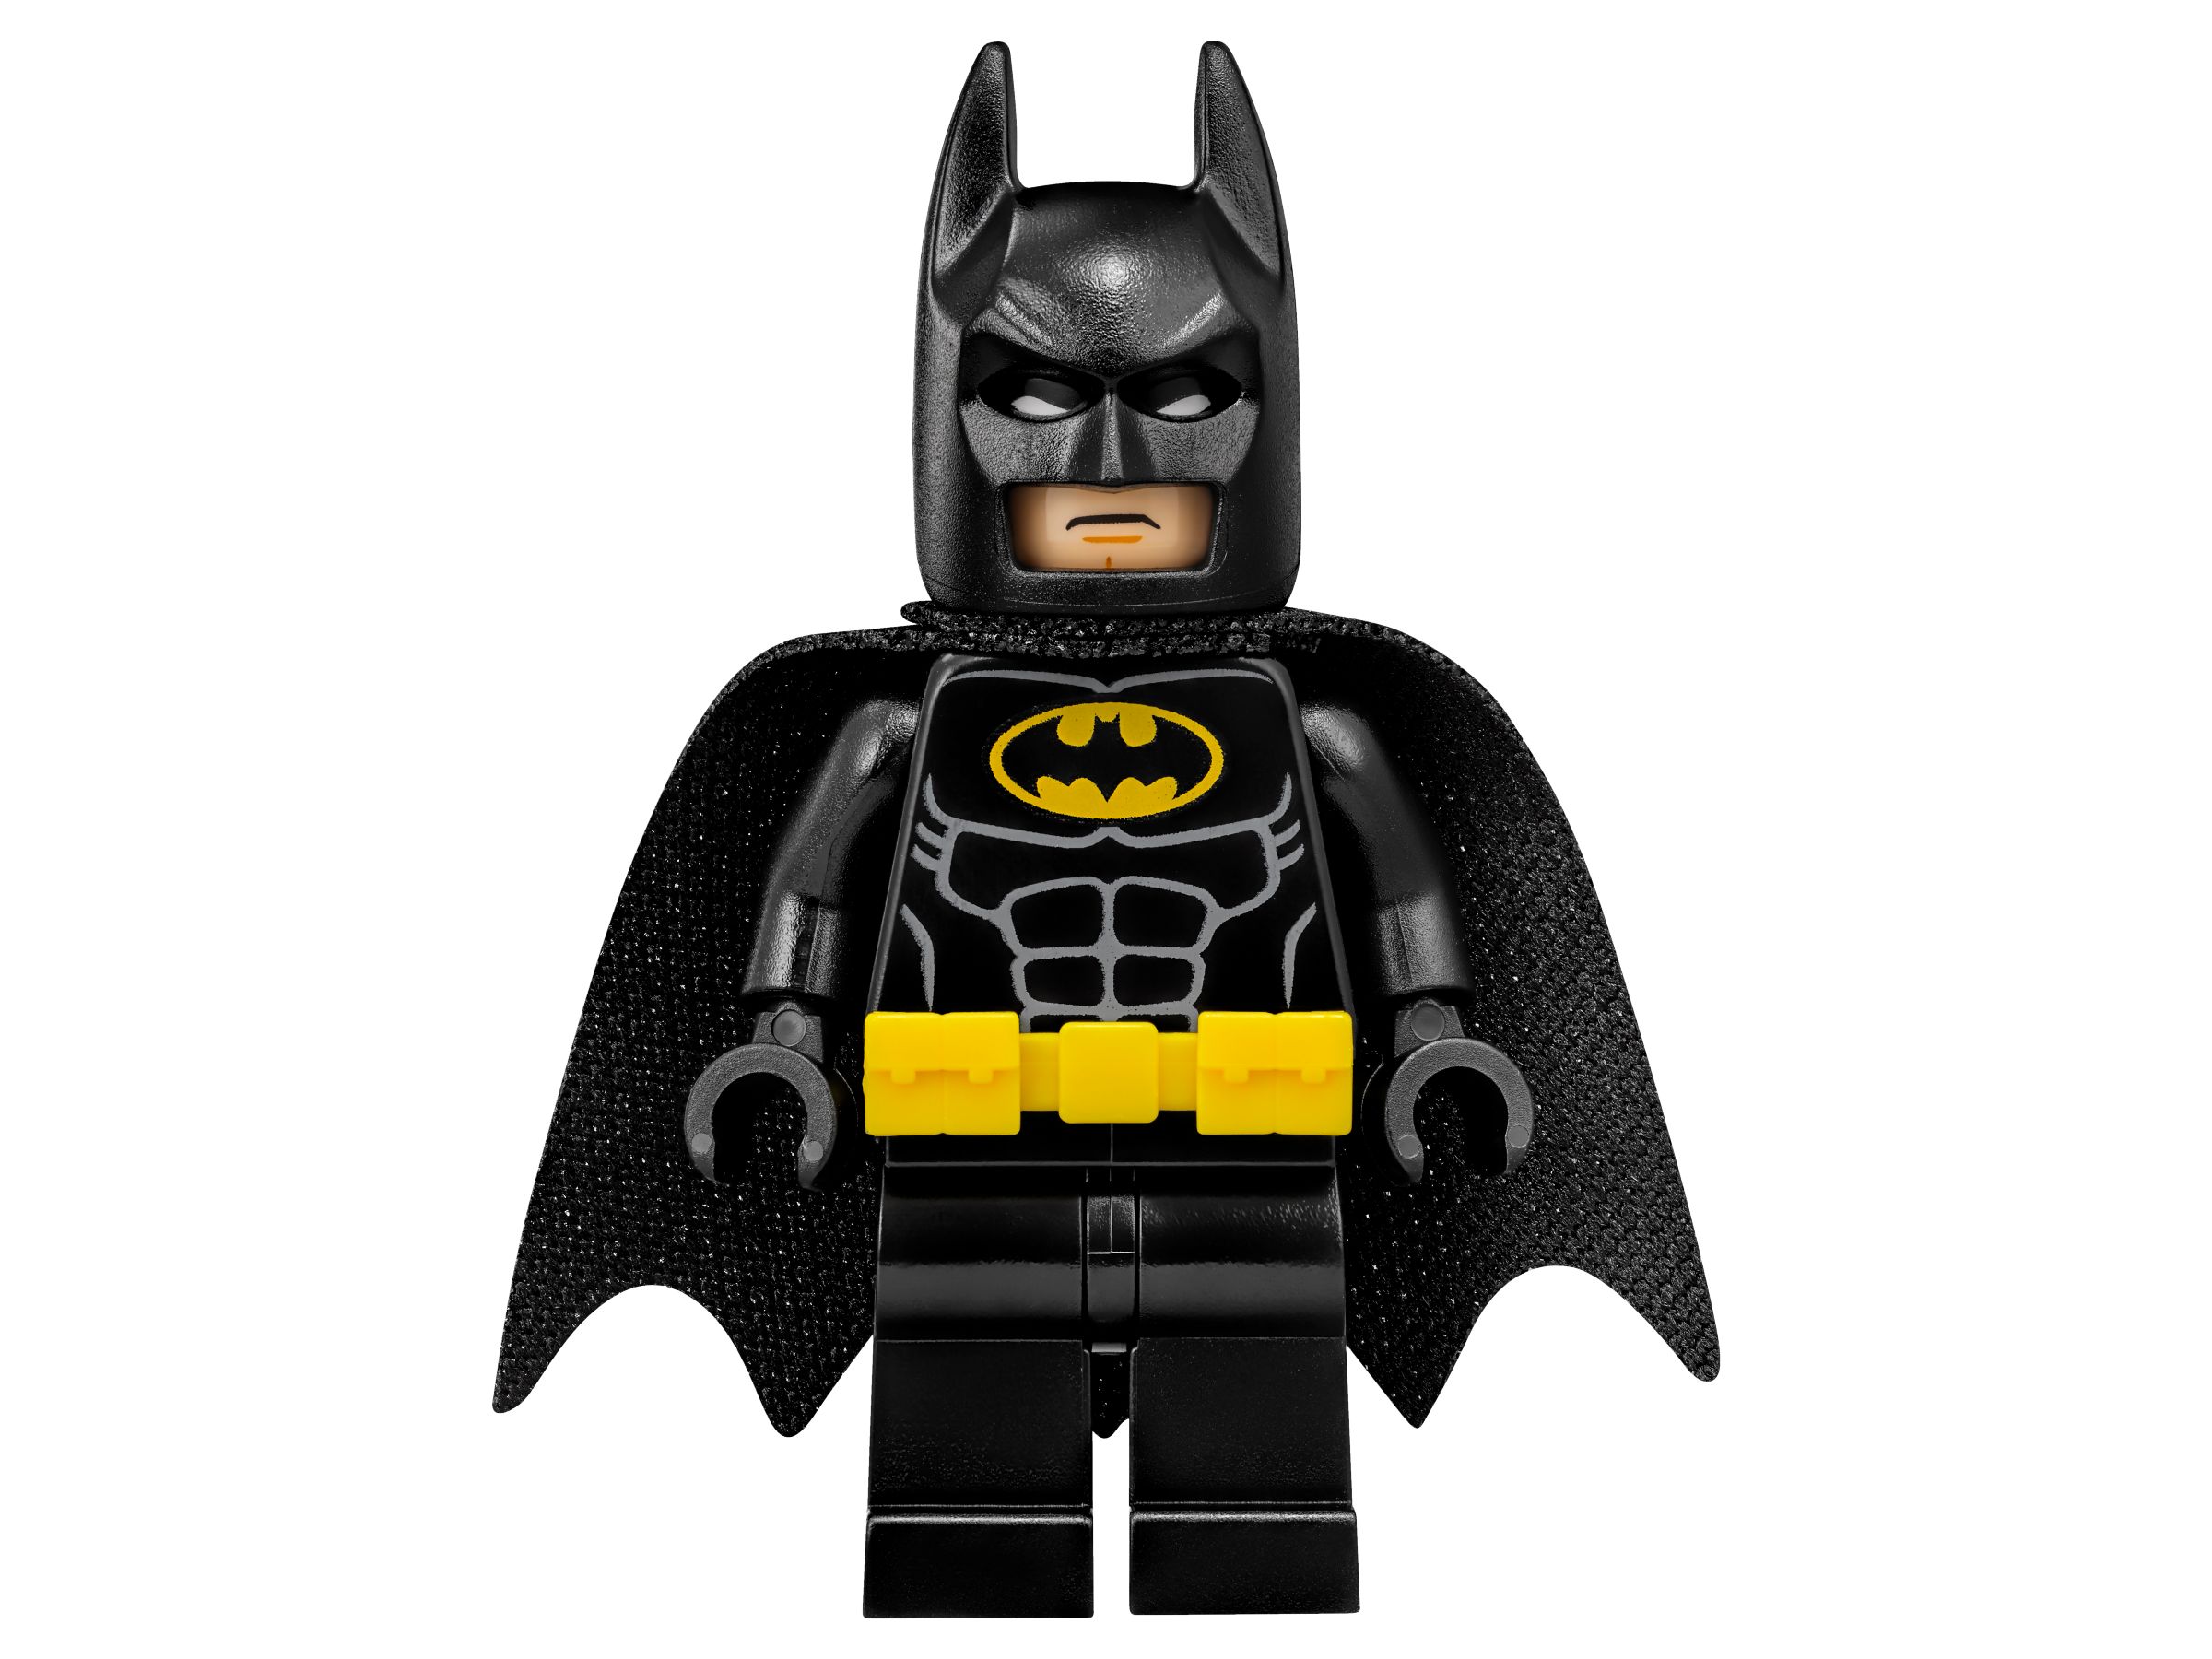 LEGO The LEGO Batman Movie 70916 Batwing LEGO_70916_alt10.jpg